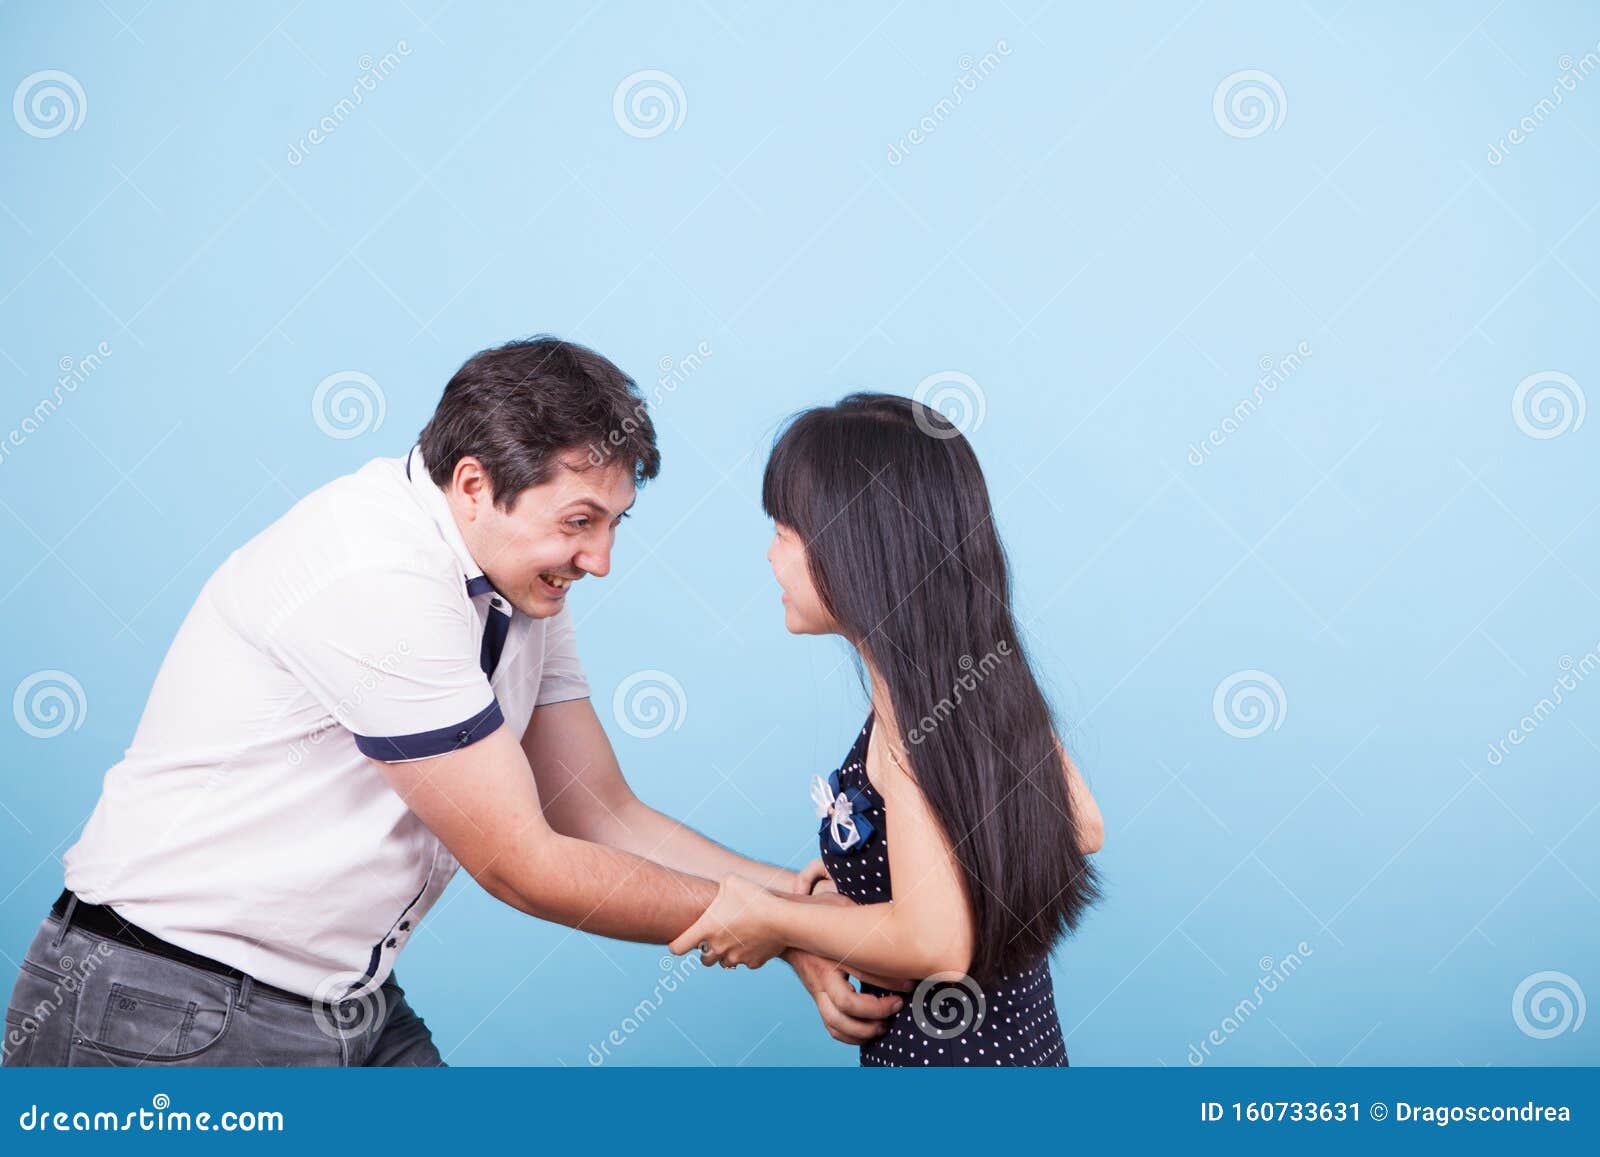 Girl Tickles Guy